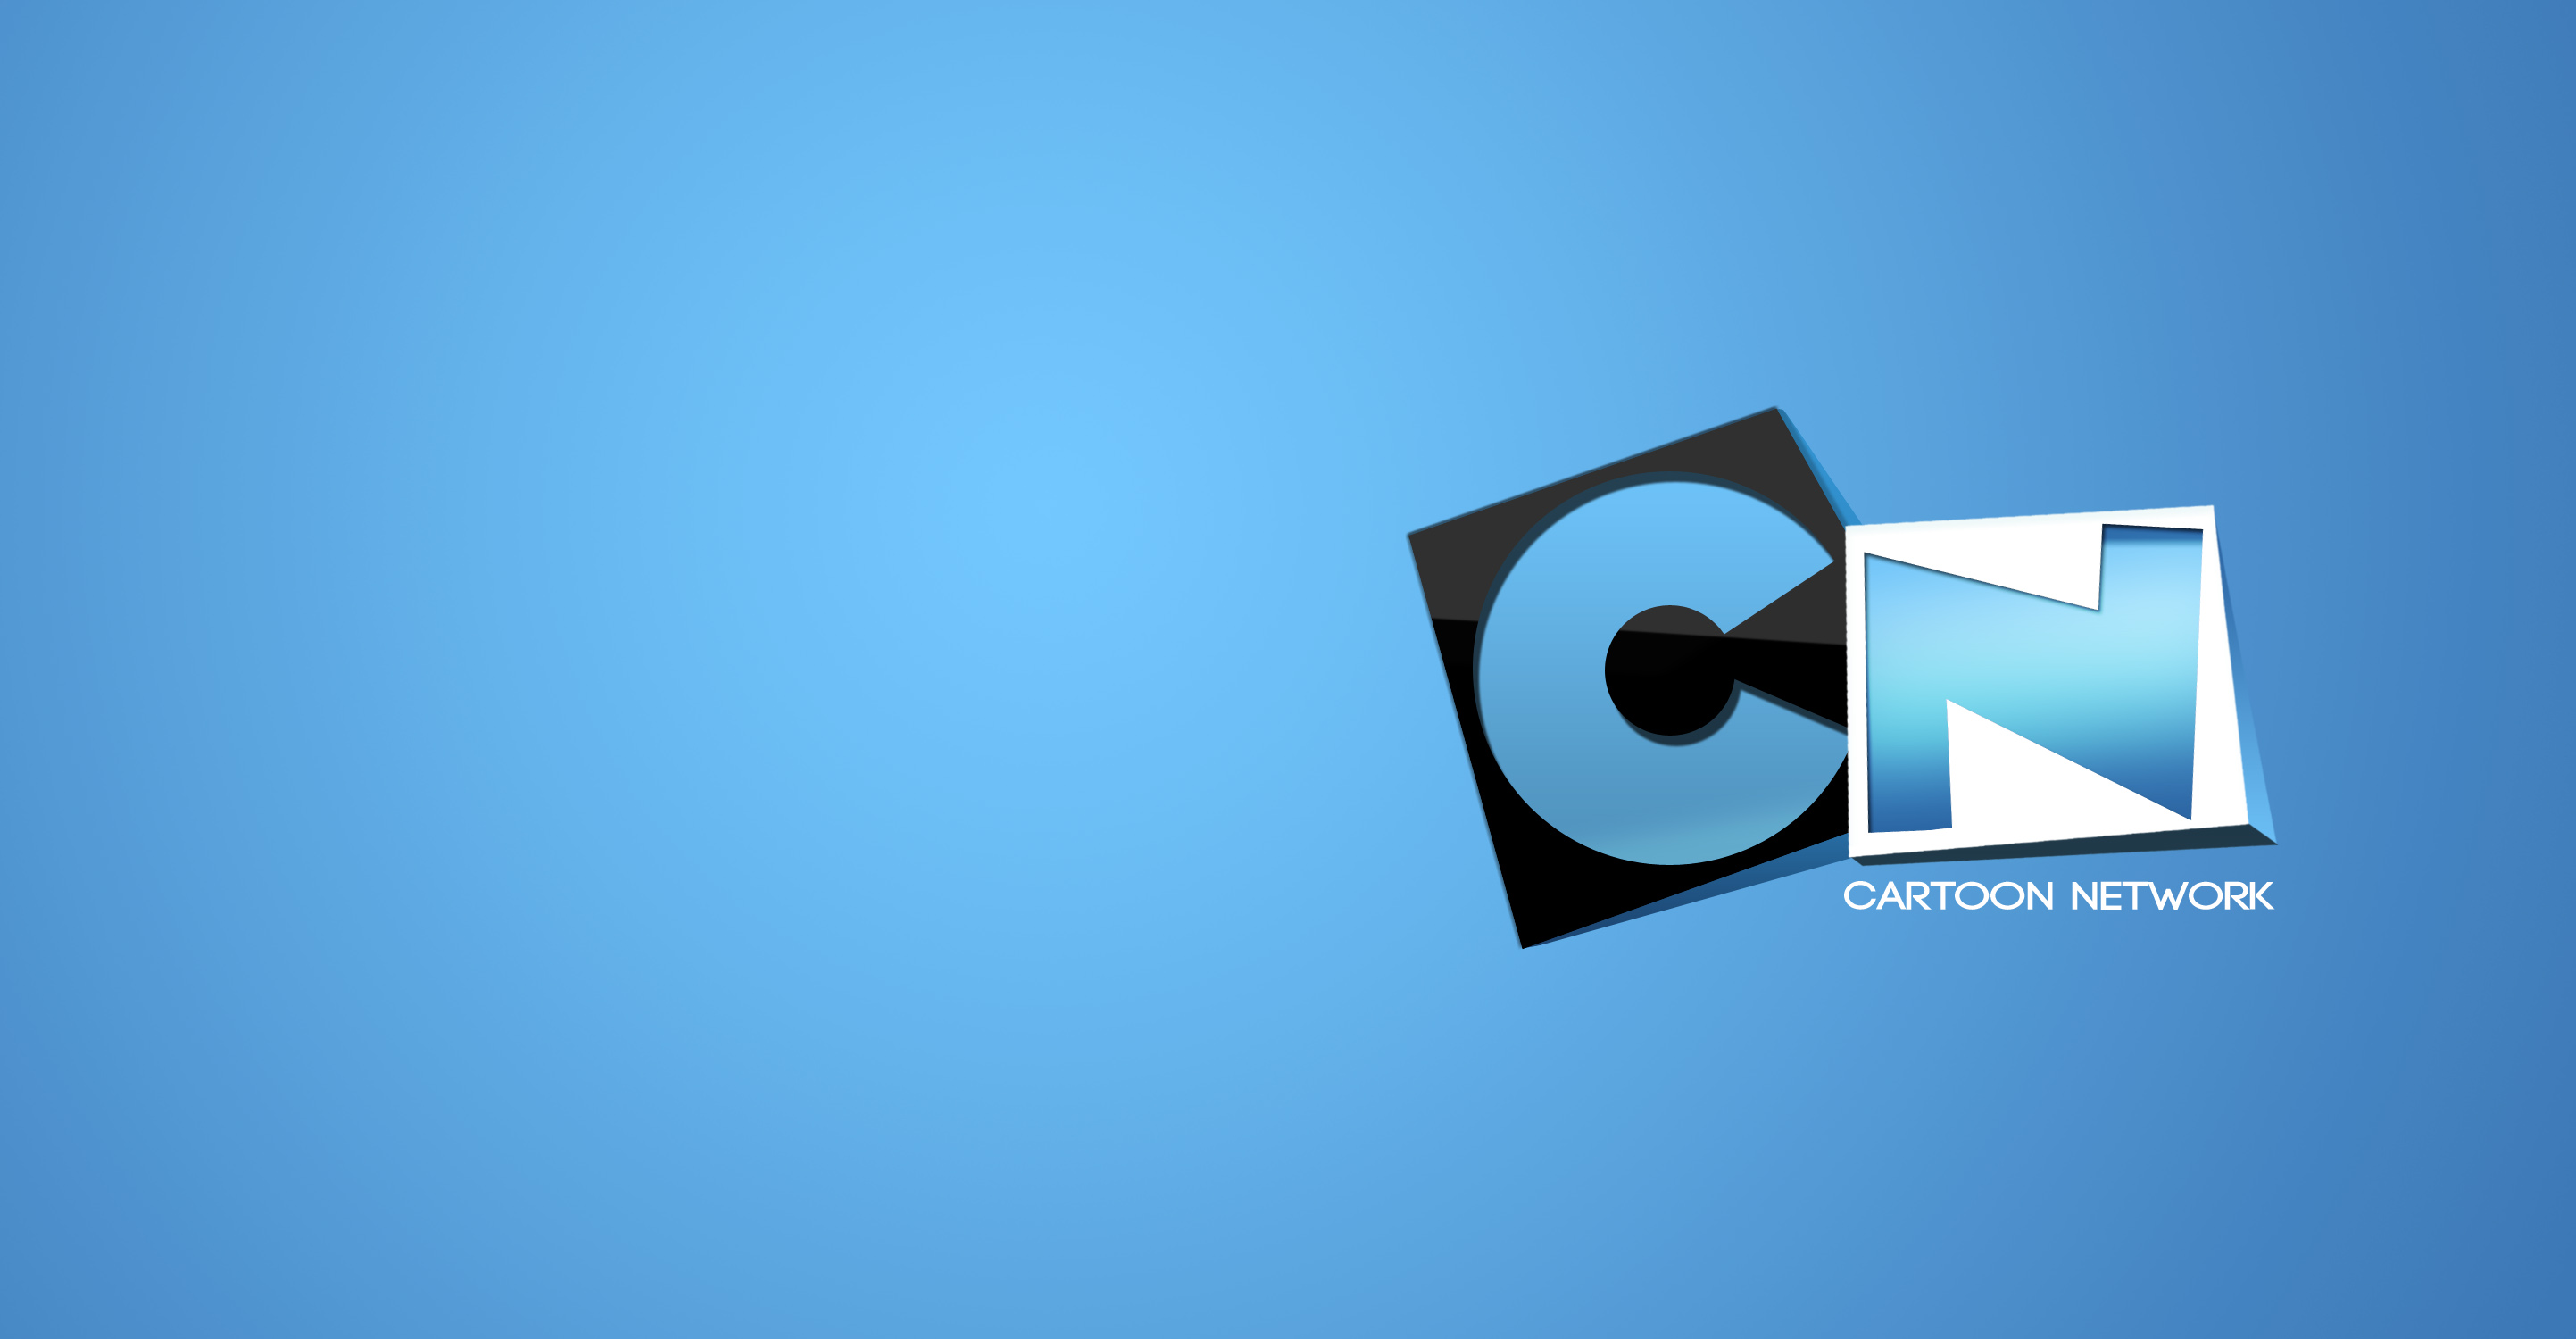 Cartoon Network Logo cartoon network logo wallpaper – Logo Database